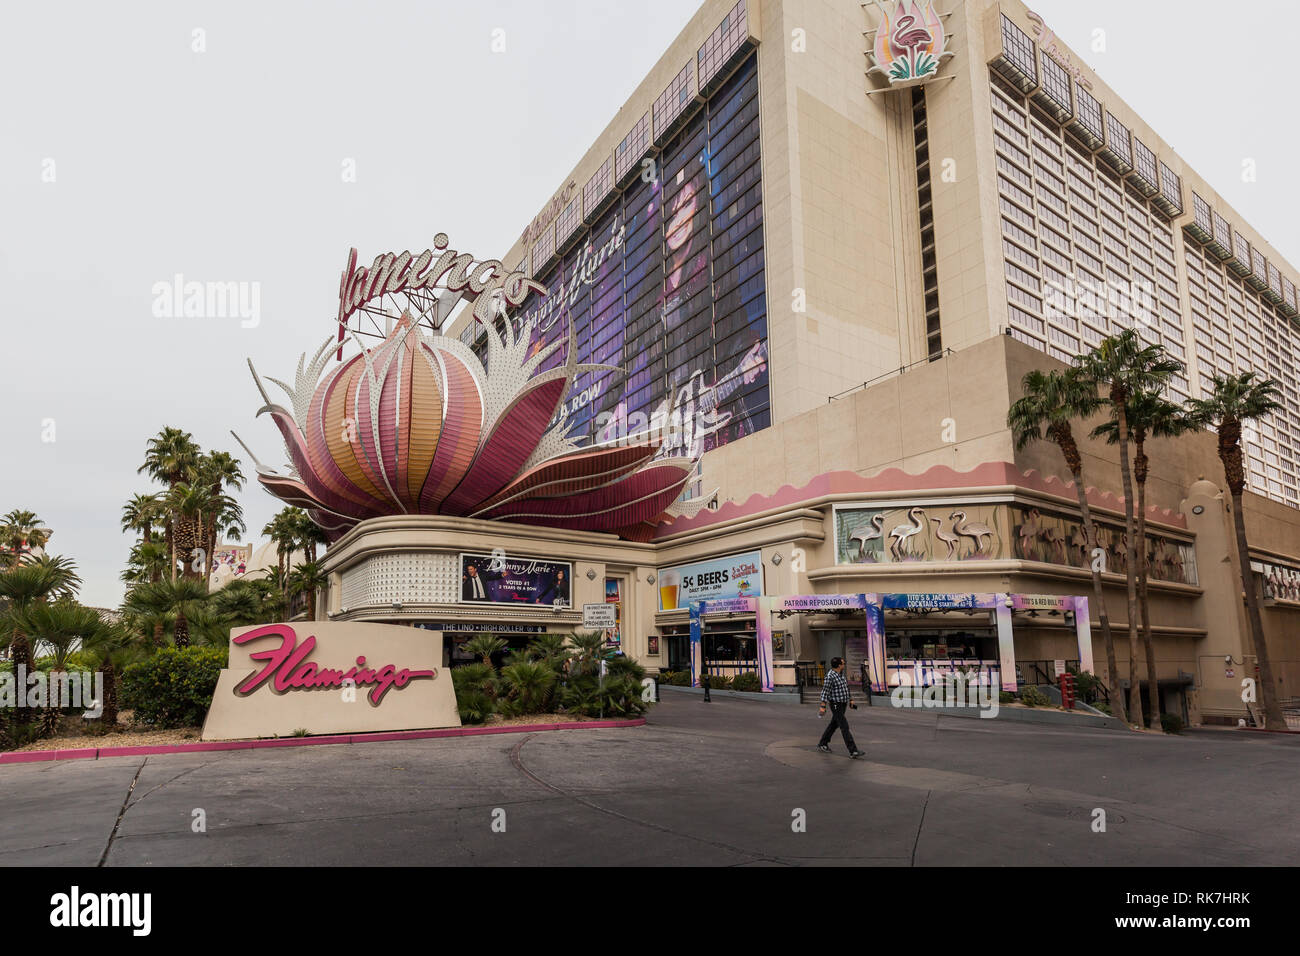 Ingresso anteriore del Flamingo Las Vegas, Flamingo è un hotel e casinò si trova sul Las Vegas Strip in Paradise, Nevada. Foto Stock